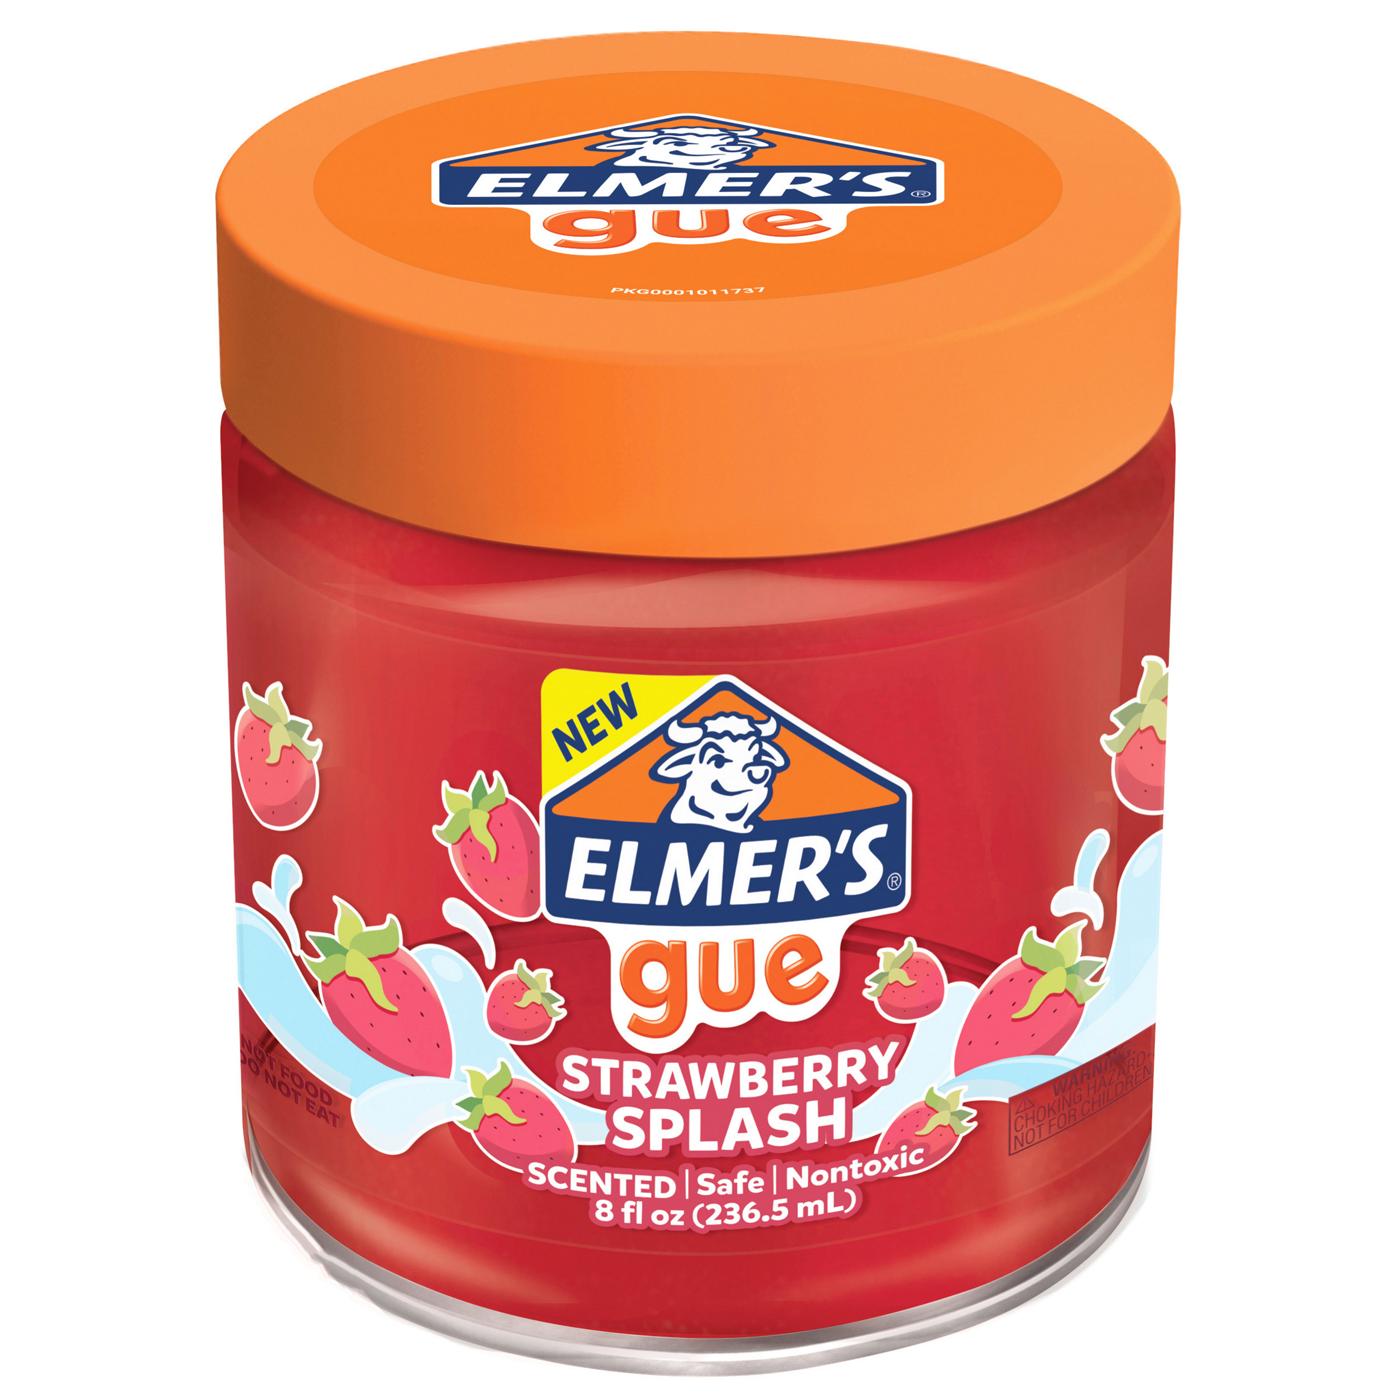 Elmer's Gue Pre-Made Slime 8oz-Strawberry Cloud, 1 count - Gerbes Super  Markets